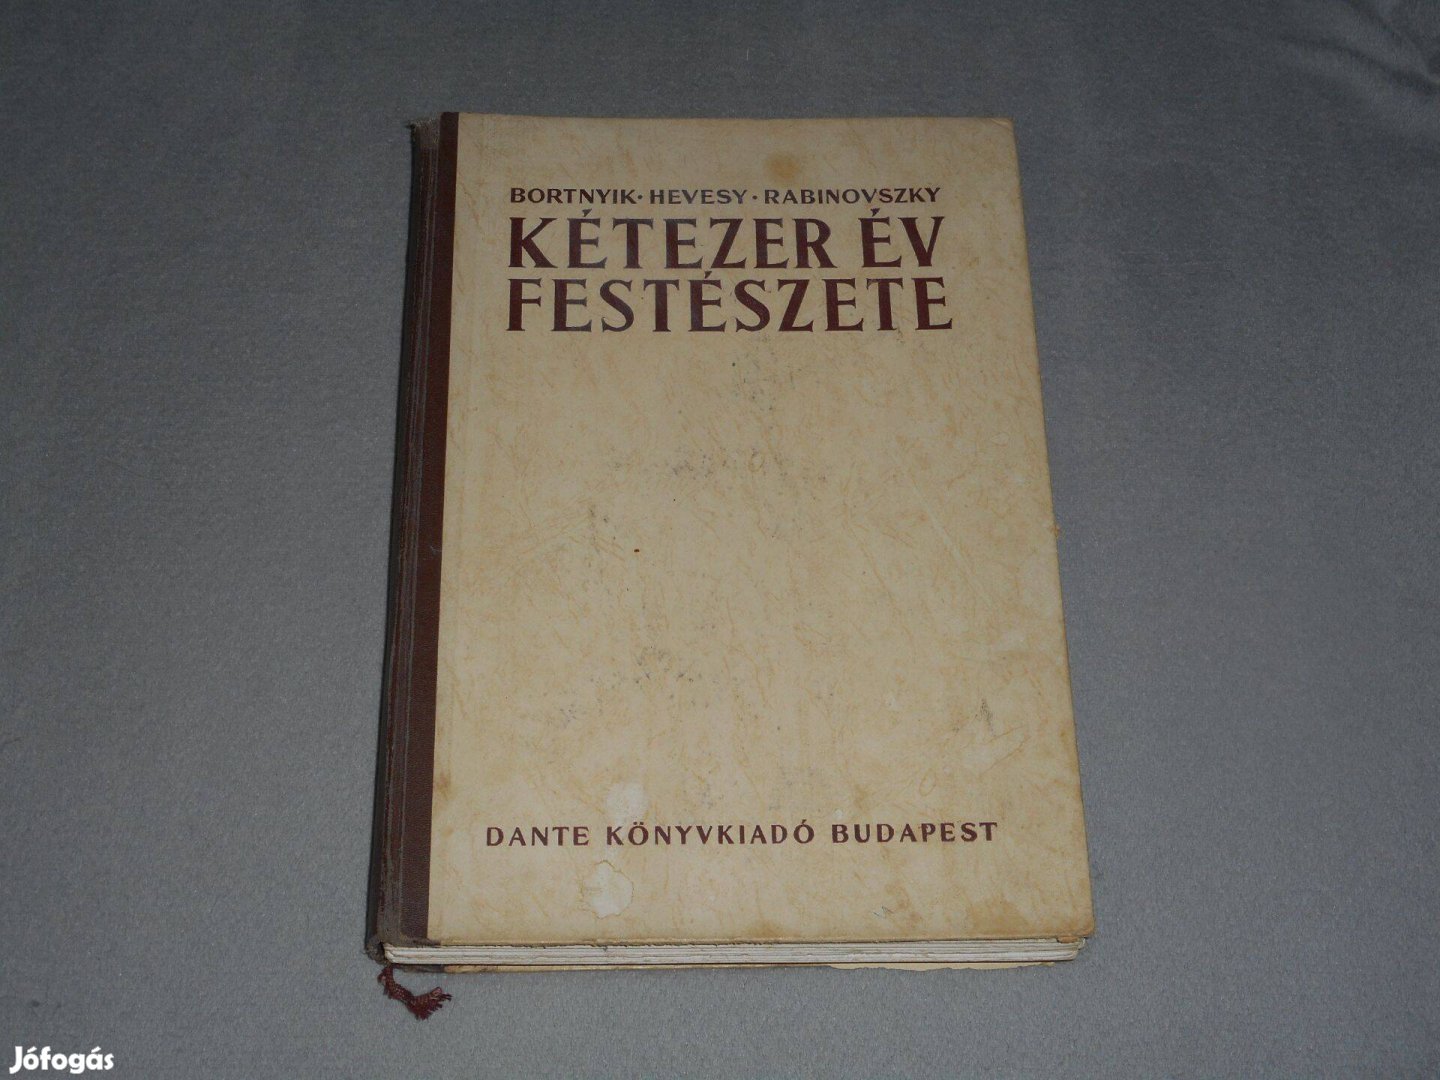 Bortnyik, Hevesy, Rabinovszky - Kétezer év festészete (Dante, 1945)